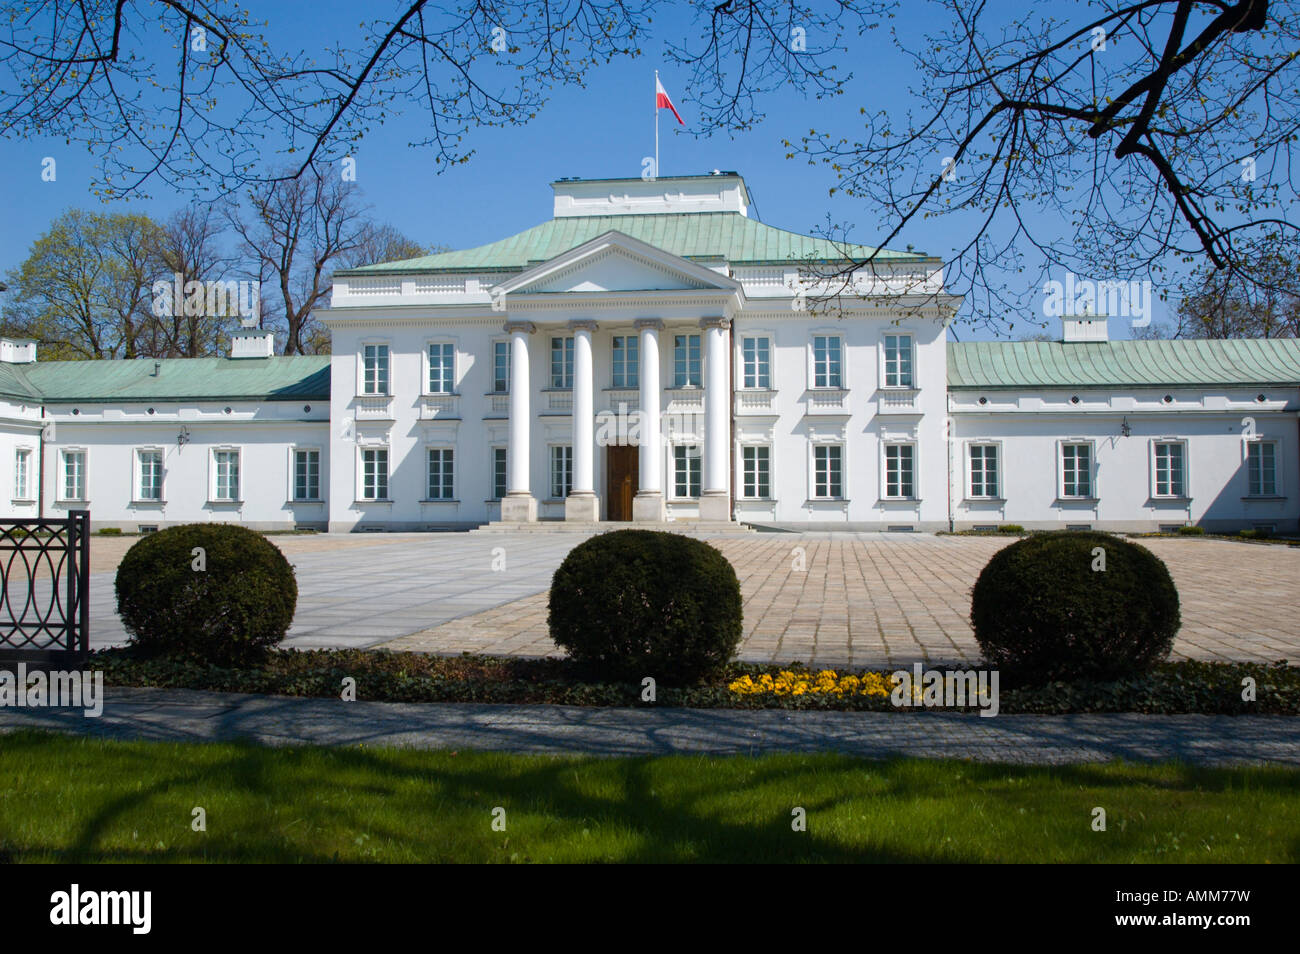 Belweder Palast ehemaligen polnischen Präsidenten Haus mit polnischen Fahnenschwingen auf dem Dach Stockfoto